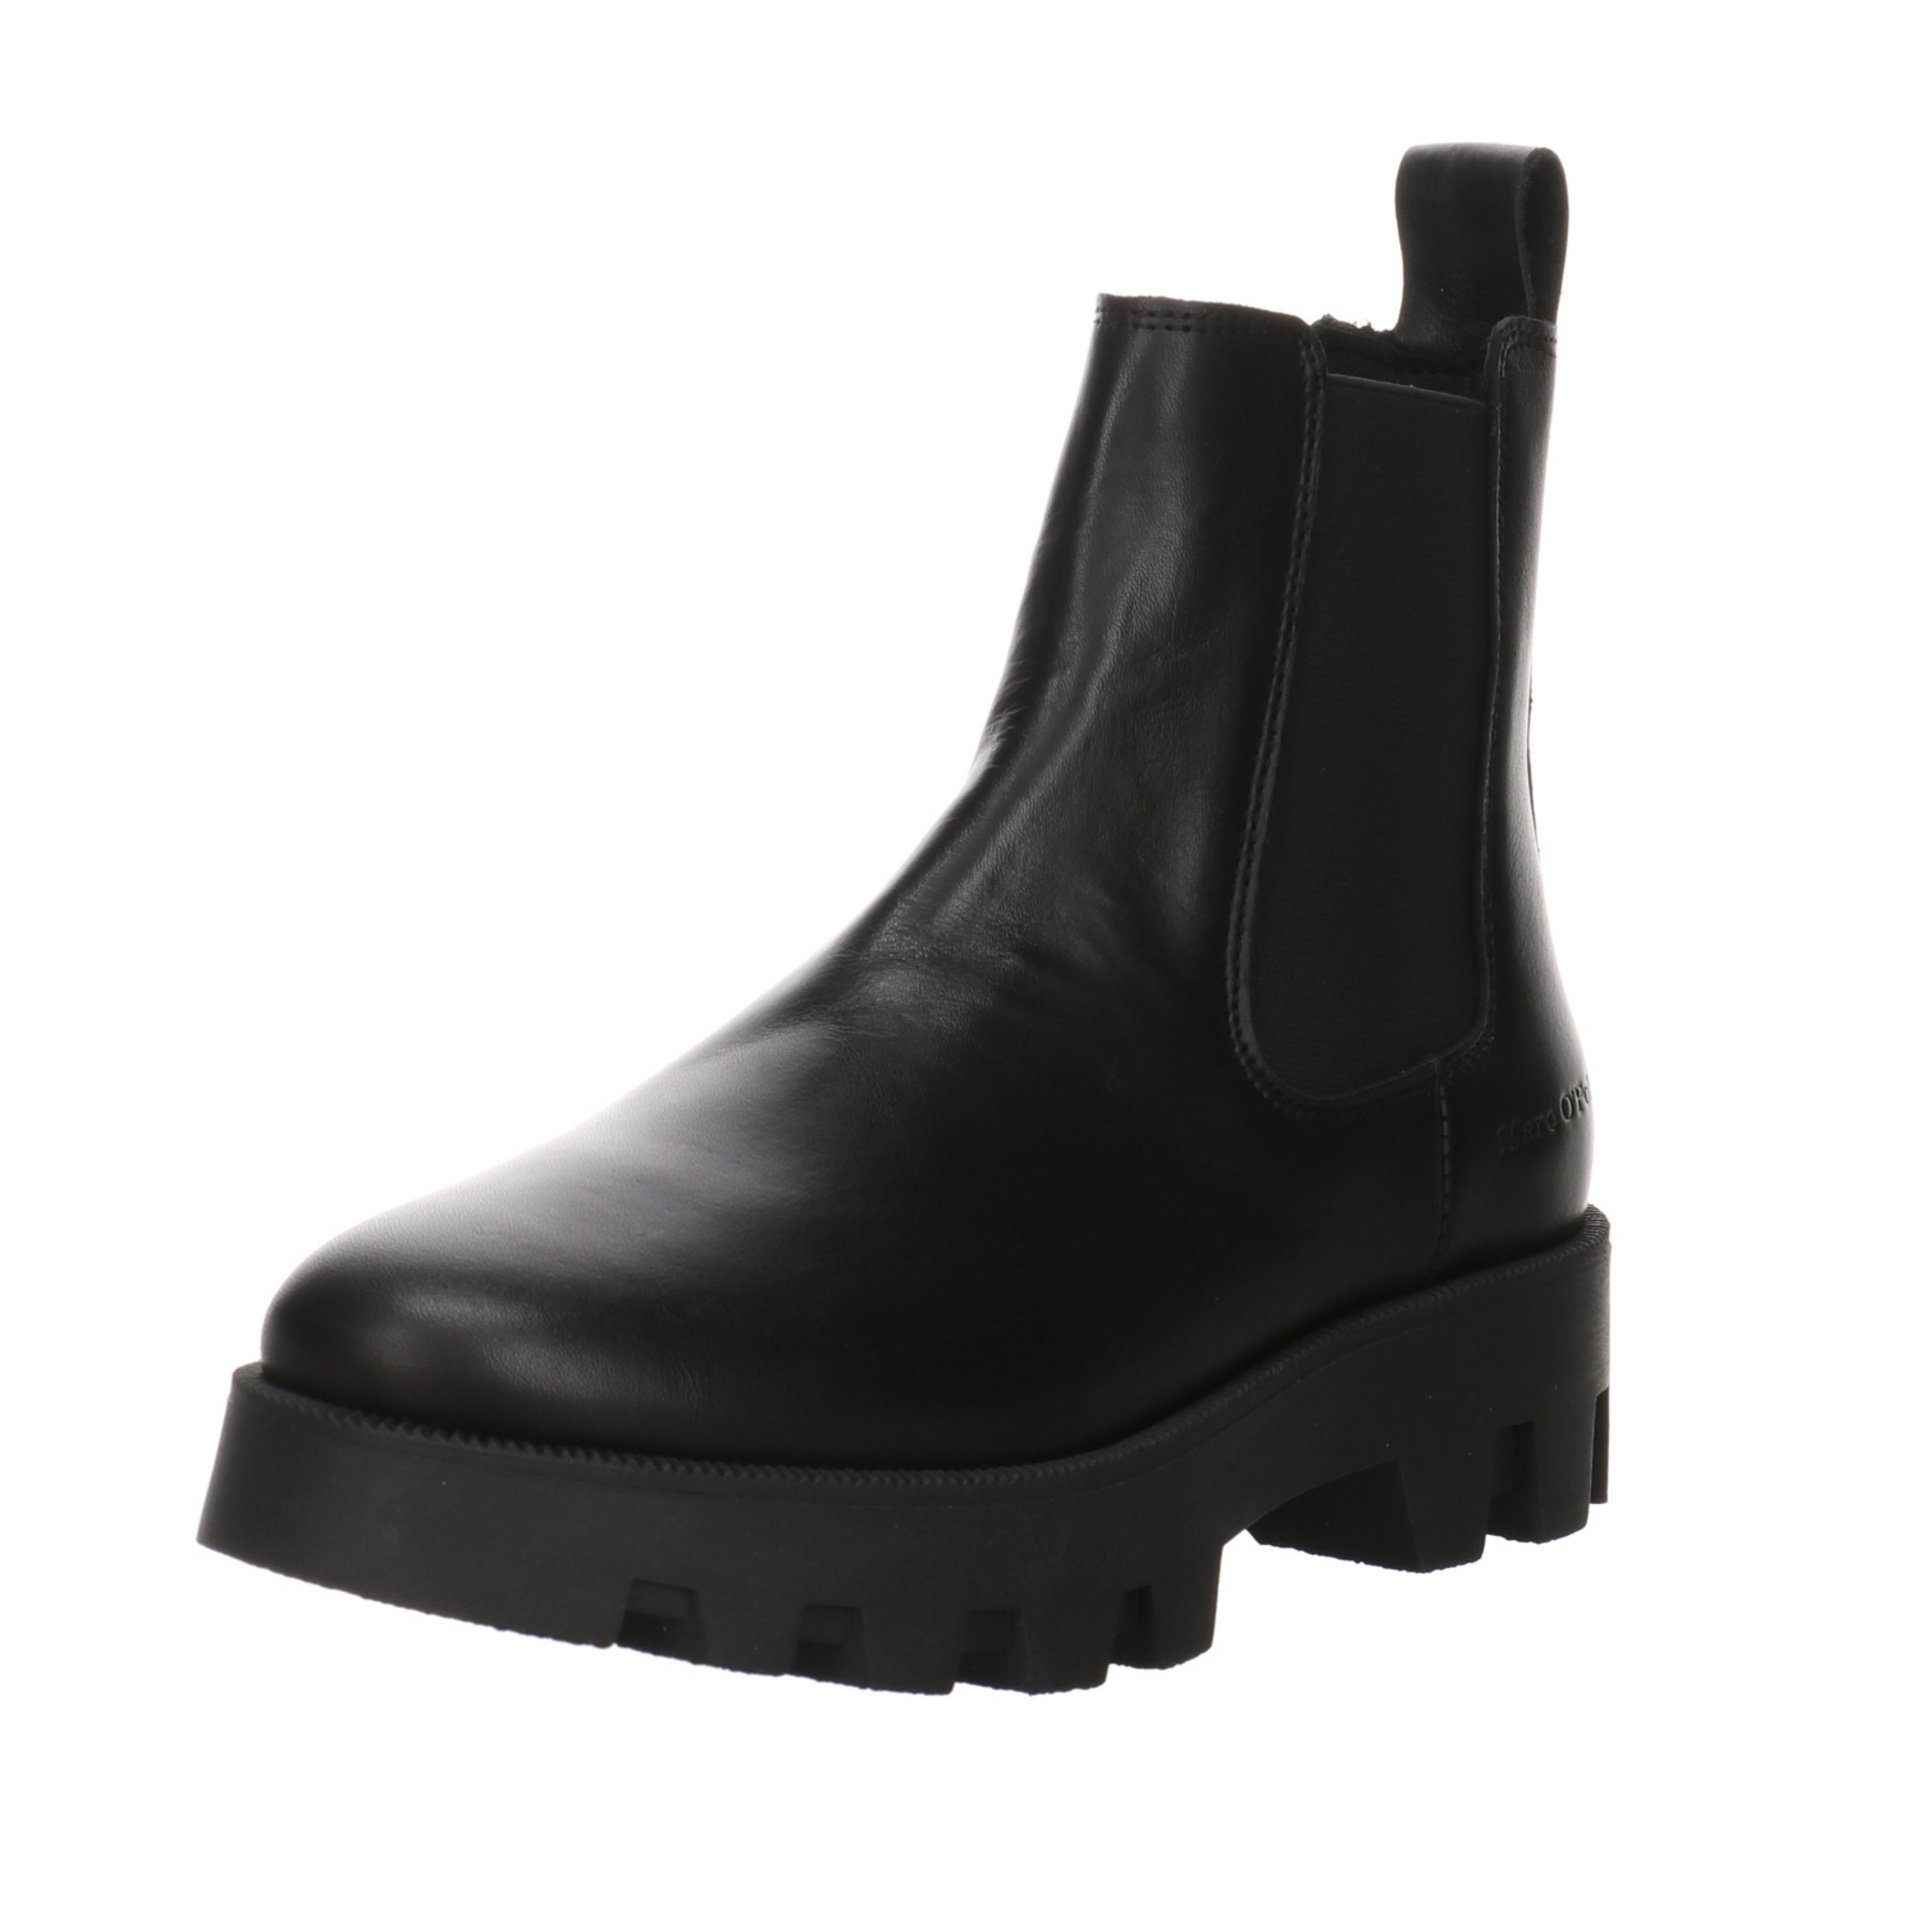 Marc O'Polo Damen Stiefeletten Schuhe Chelsea-Boots Stiefelette Leder-/Textilkombination